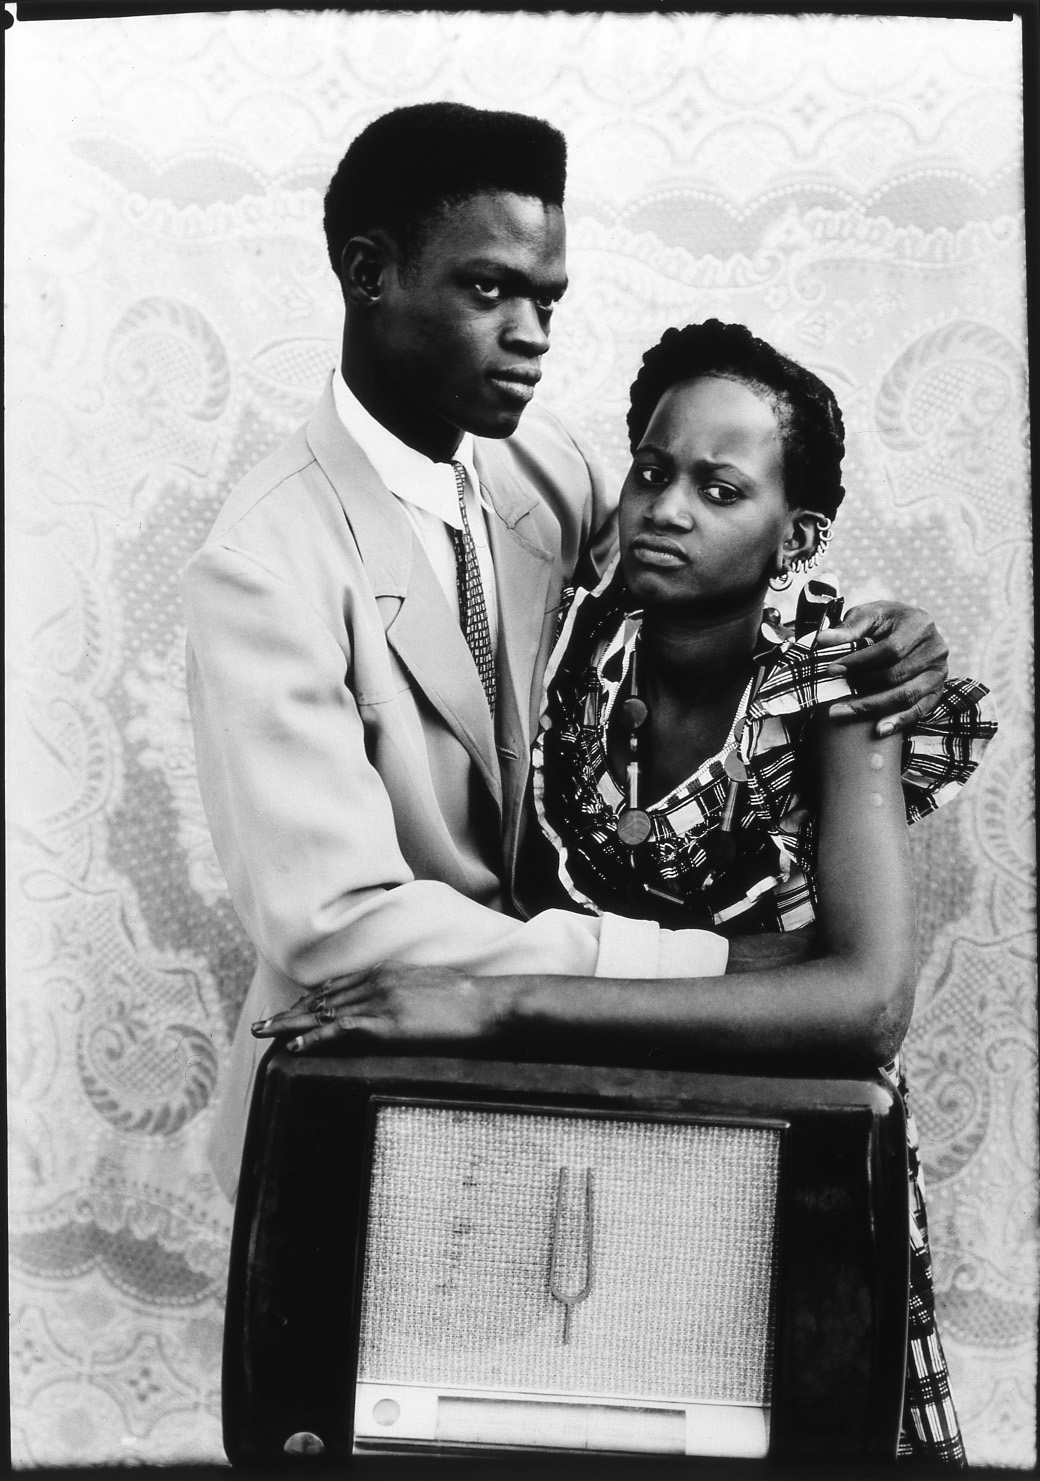 Seydou Keïta (1921-2001), Sans titre, 1949-1951, tirage argentique noir et blanc sur papier baryté, Keïta/SKPEAC, exposée à Paris Photo. Courtesy Coll